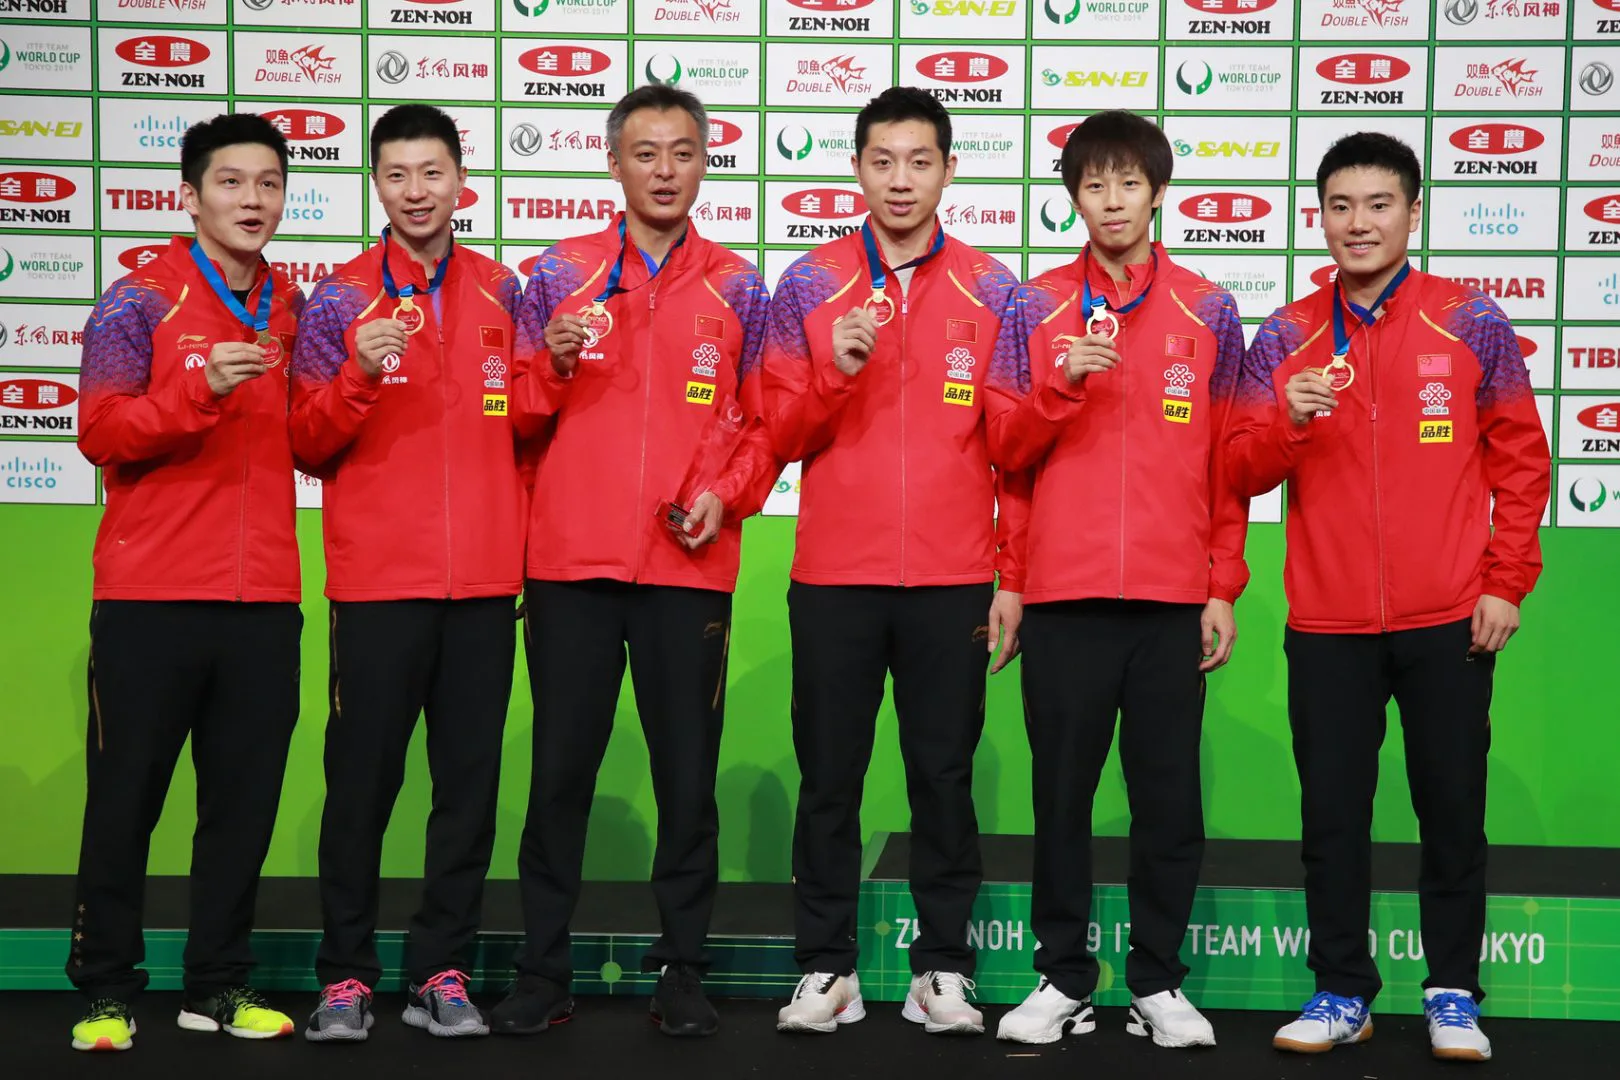 卓球帝国 中国男子 圧倒的王者の強さの理由 東京五輪ライバル国特集 卓球メディア Rallys ラリーズ